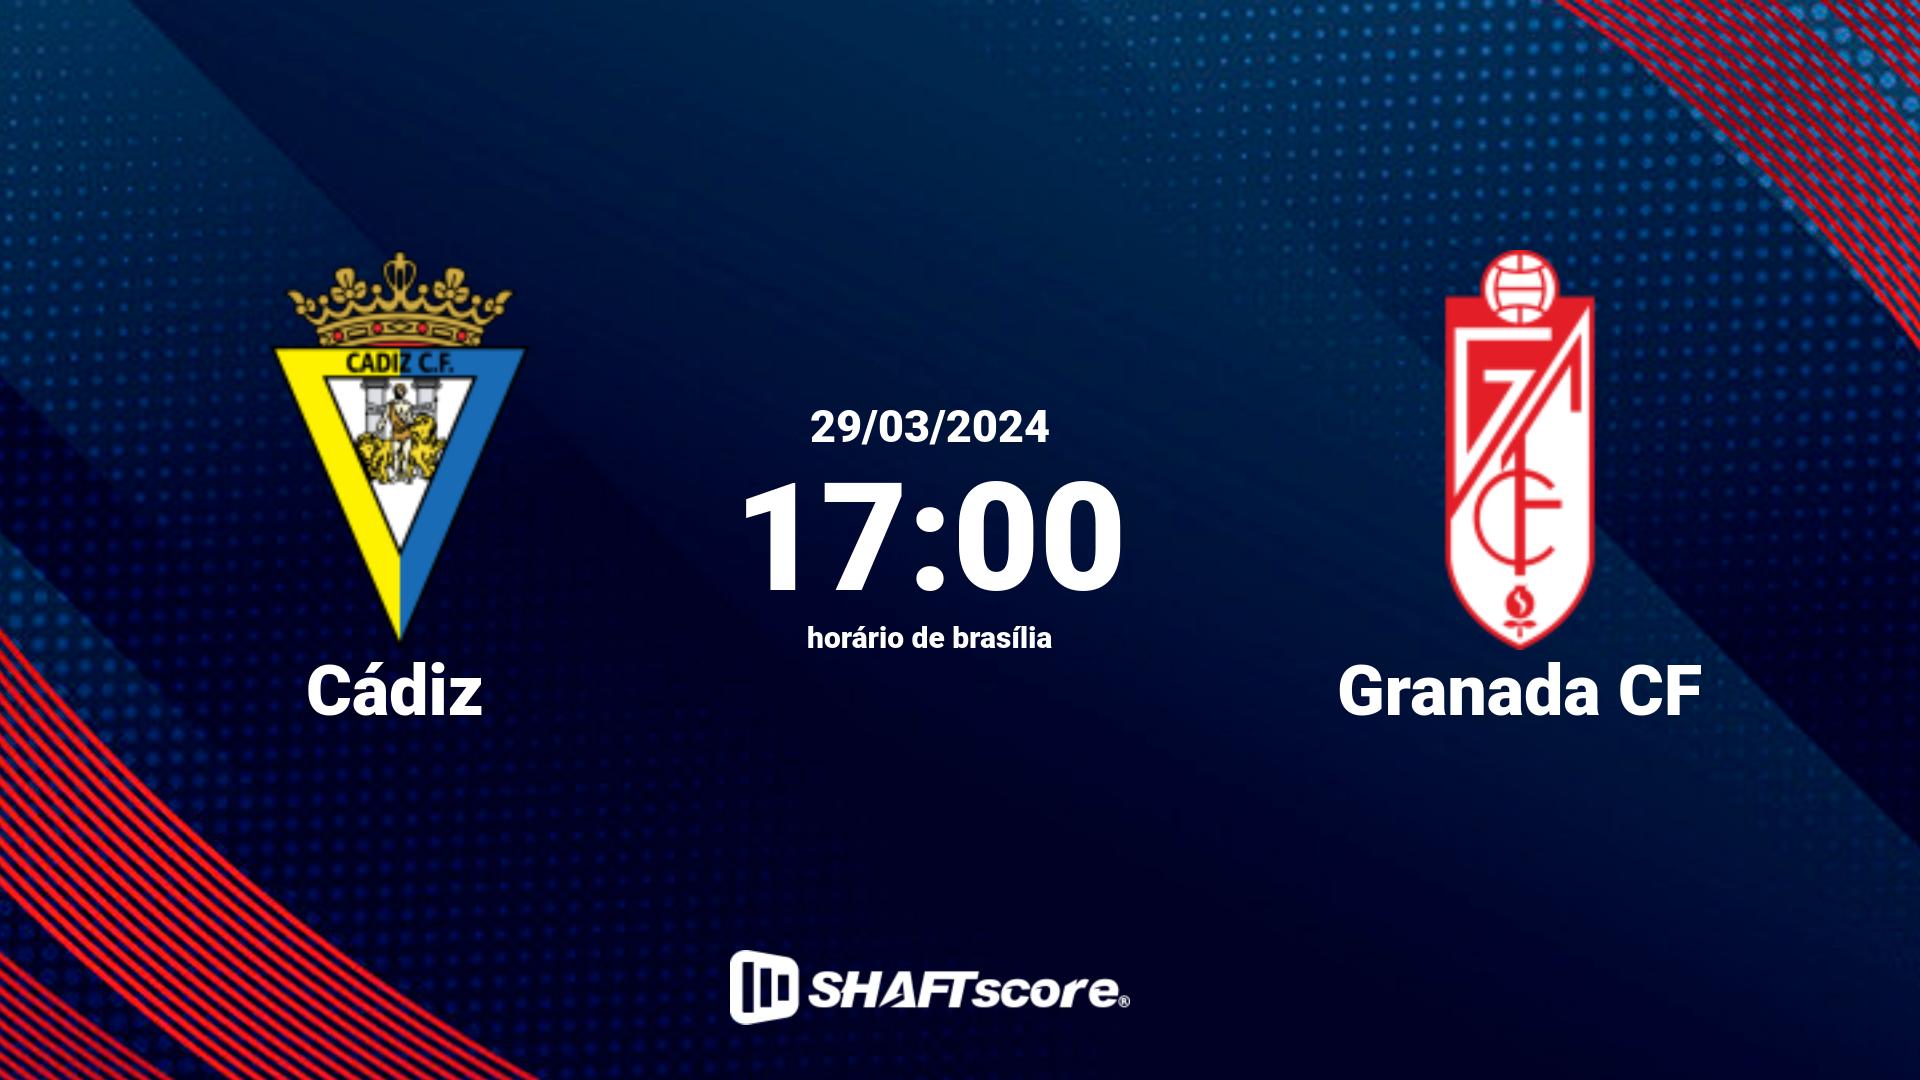 Estatísticas do jogo Cádiz vs Granada CF 29.03 17:00